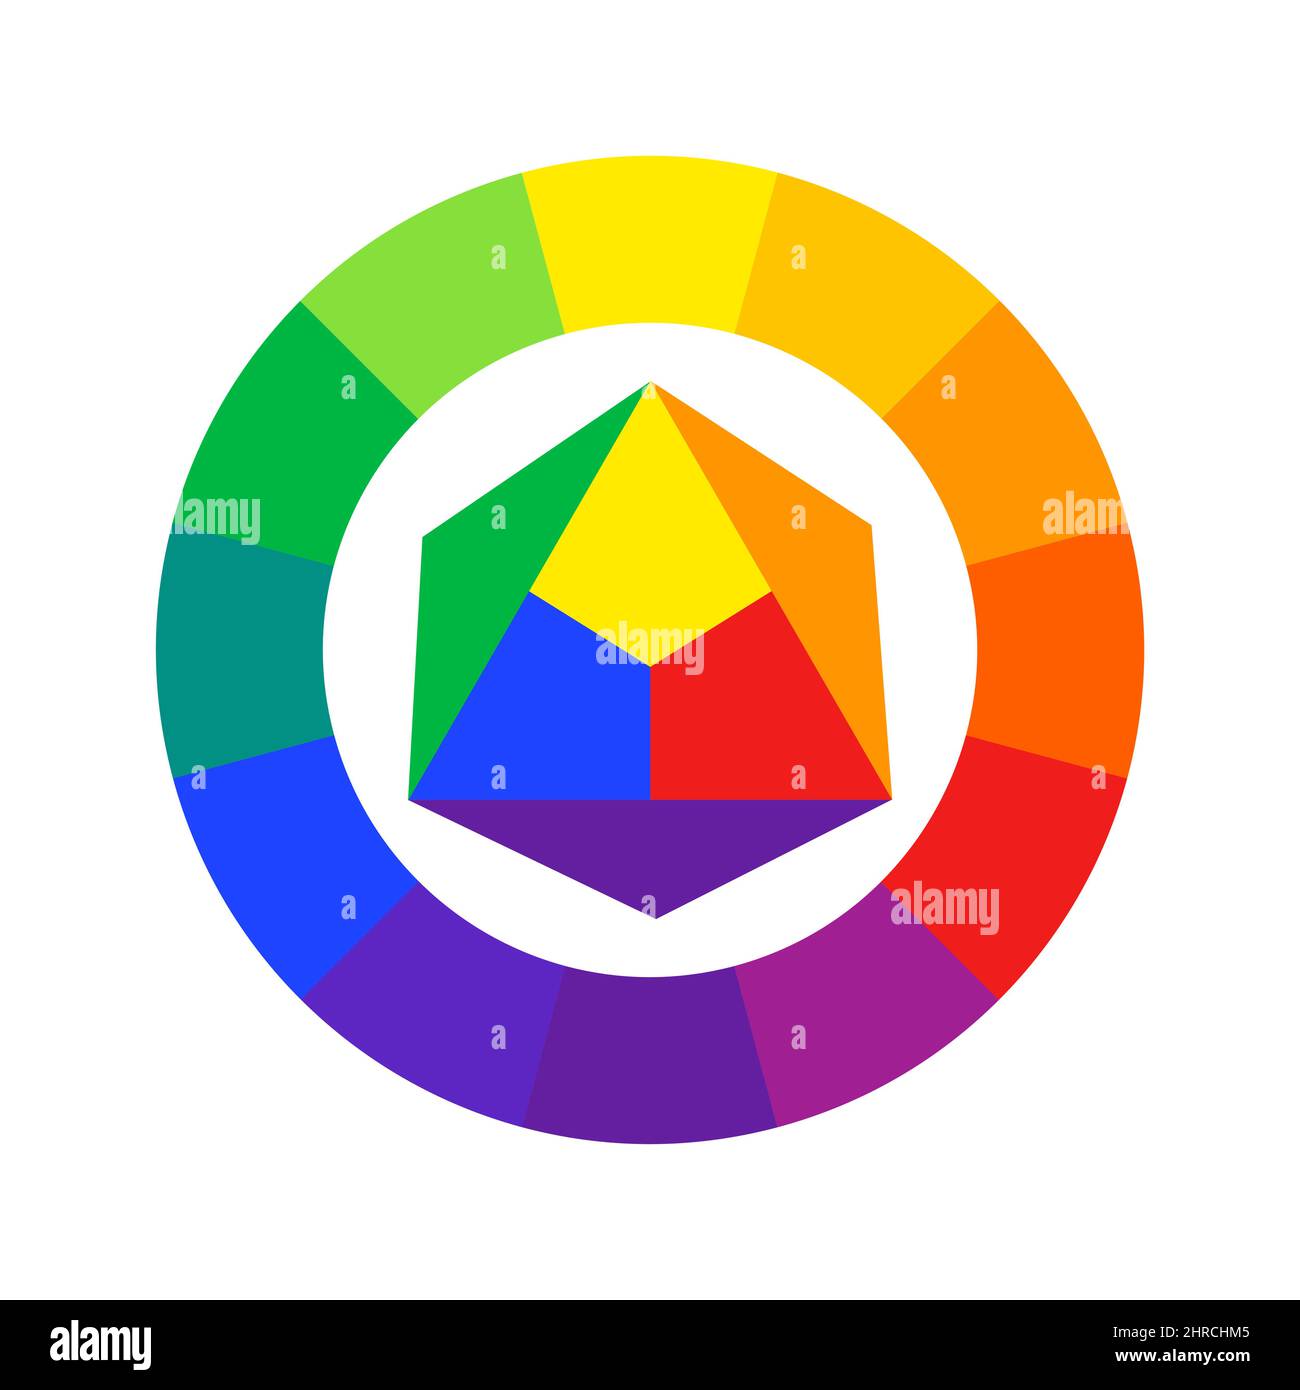 Guida della ruota a colori basata sul modello RYB. Miscelazione dei colori primari rosso, giallo, blu. Il sistema colore è utilizzato dagli artisti Illustrazione Vettoriale